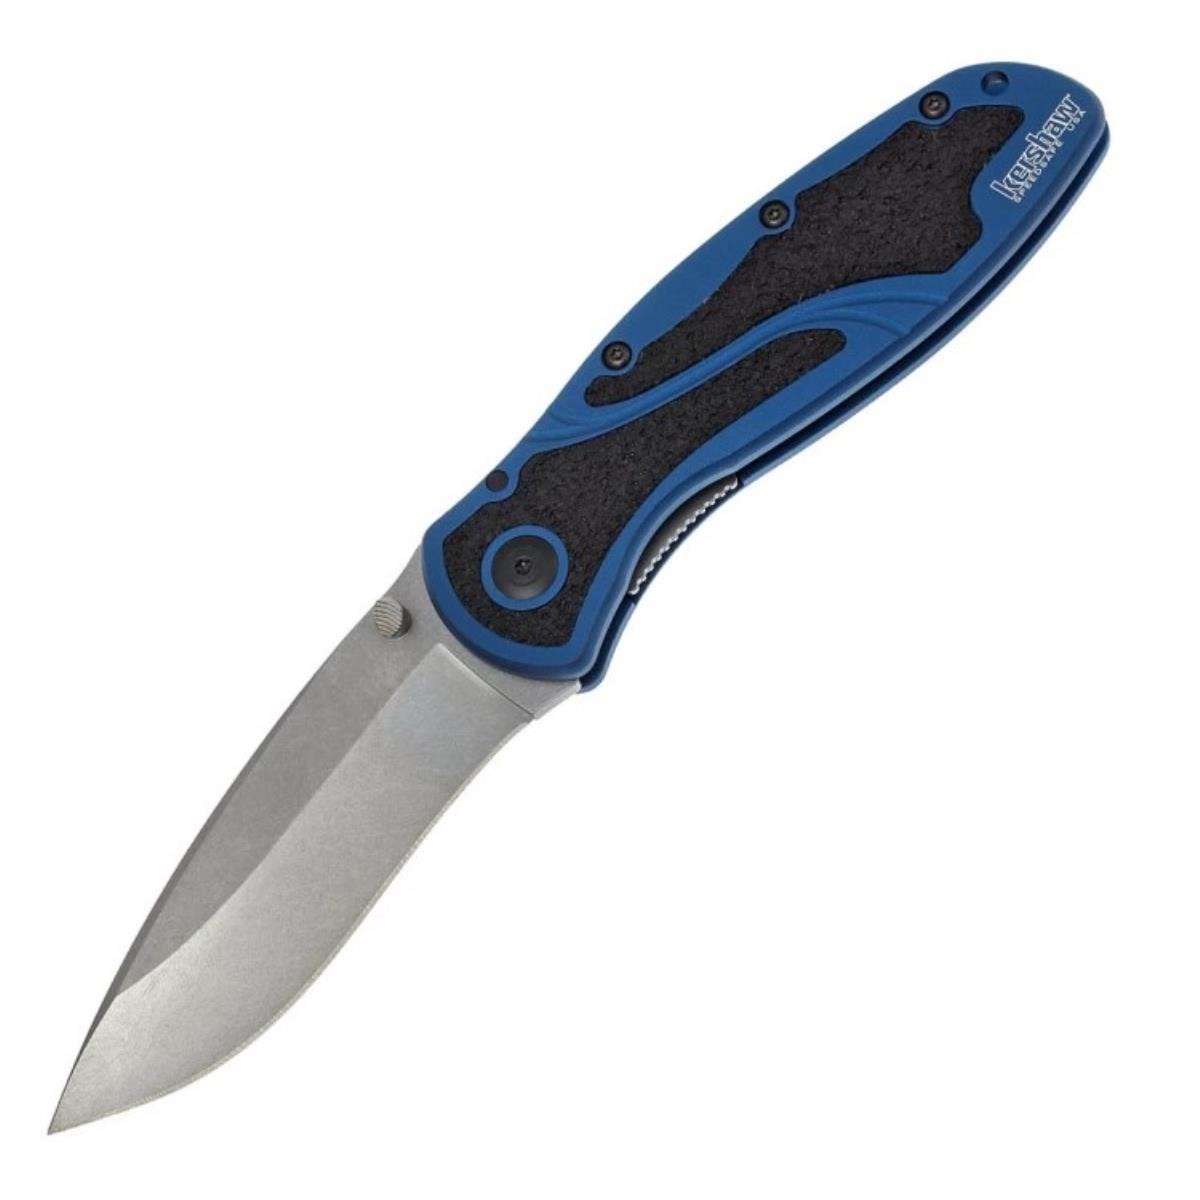 Нож склад., алюм. рук-ть синяя, клинок Sandvik 14C28N - K1670NBSW Blur KERSHAW лезвия для ножа макетного fit